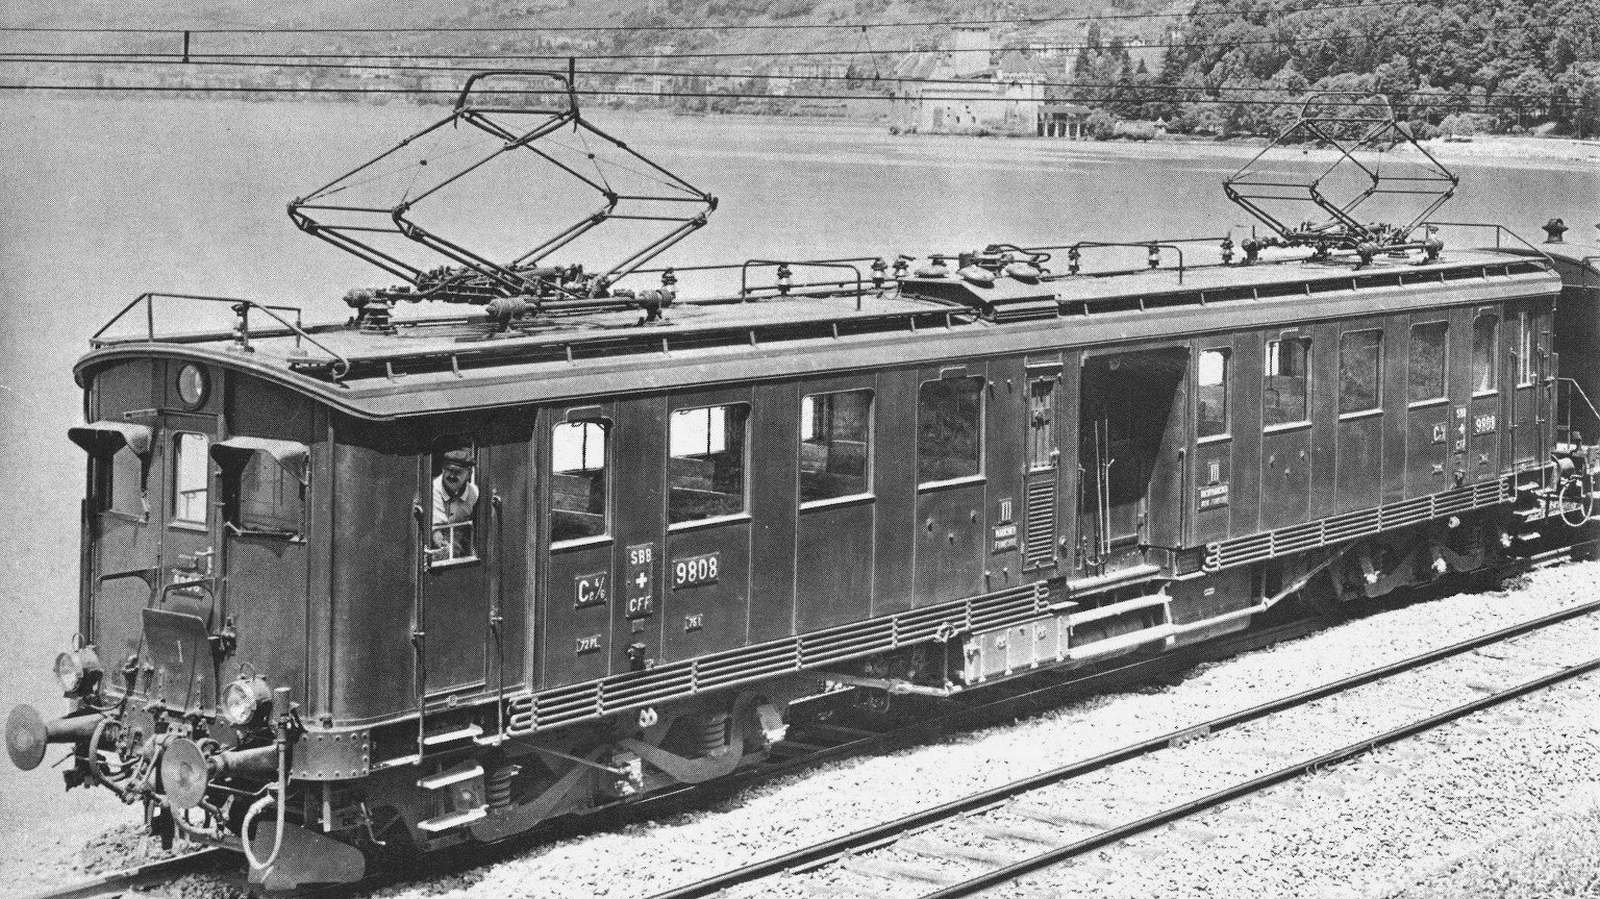 Ce 4/6 9808 in September 1925 at Lake Geneva